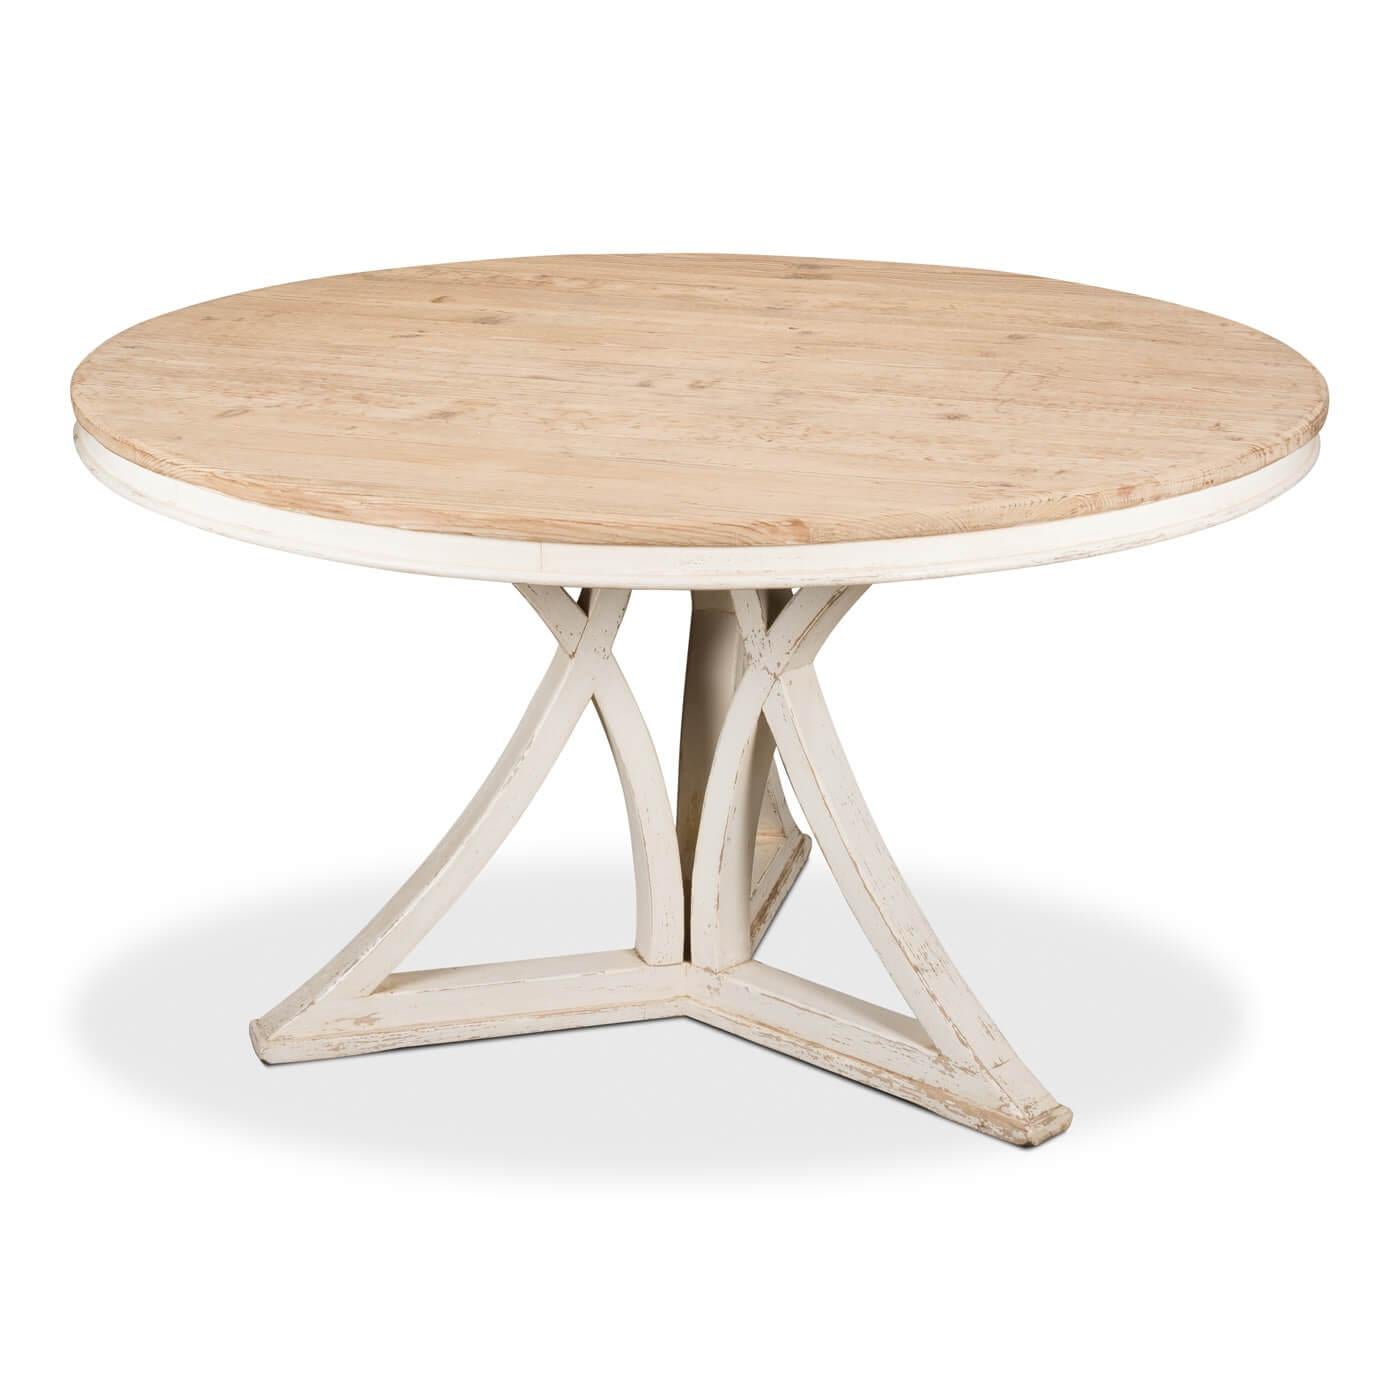 Table de salle à manger ronde moderne et rustique avec un plateau en pin naturel et une base blanche vieillie de forme inhabituelle. 

Dimensions : 54